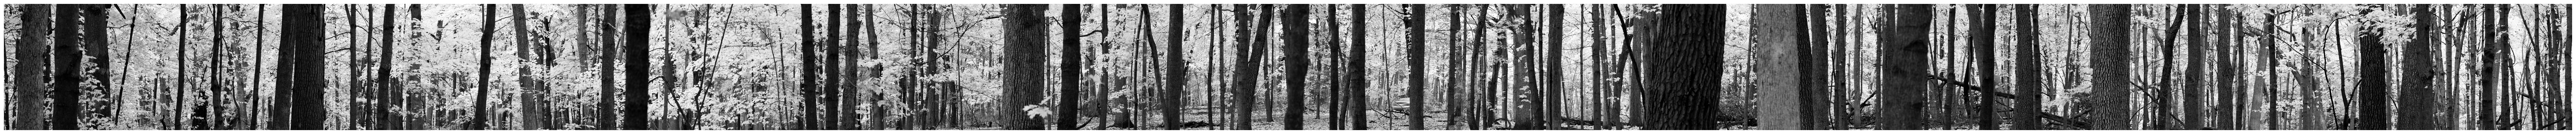 Maple woods 2